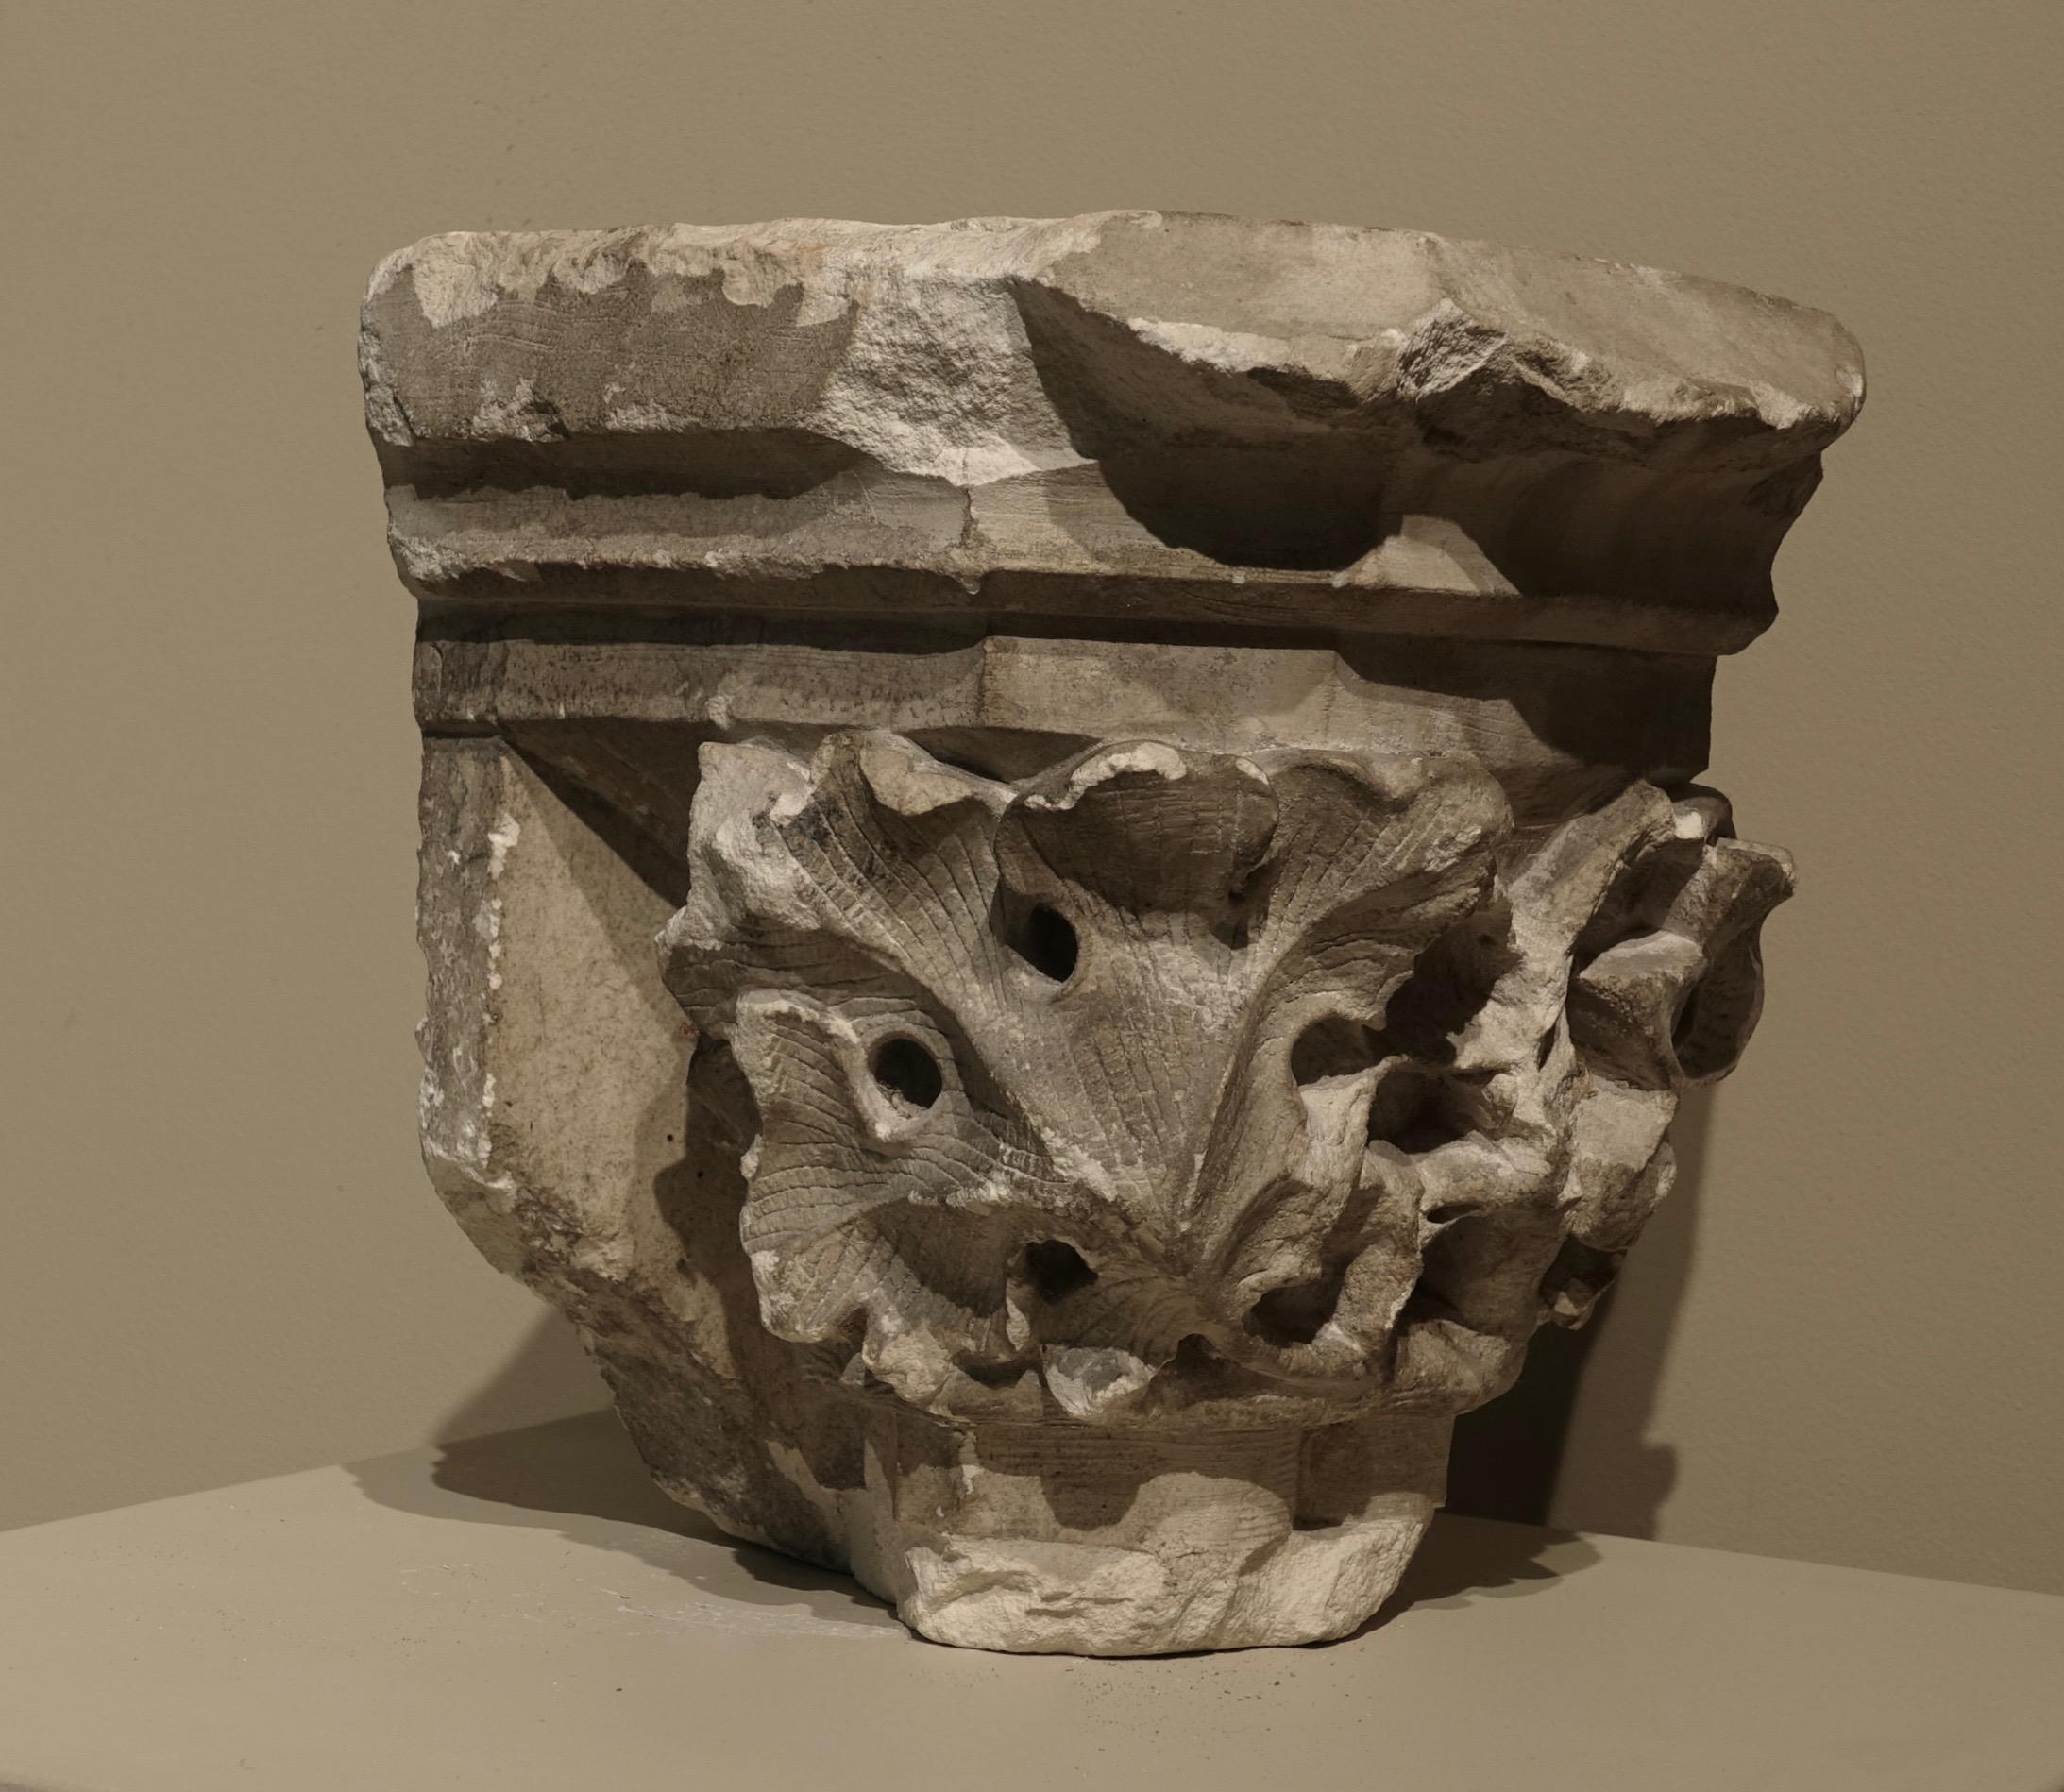 Gotisches Kapitell mit Blattwerkverzierung
Frankreich, Kalkstein
13. Jahrhundert
16,5 x 17 x 12,5 cm


Die Blätter sind organisch um den Kern des Abakus angeordnet; der Boden des Kapitells besteht aus einer einfachen runden Basis. Das Kapitell ist